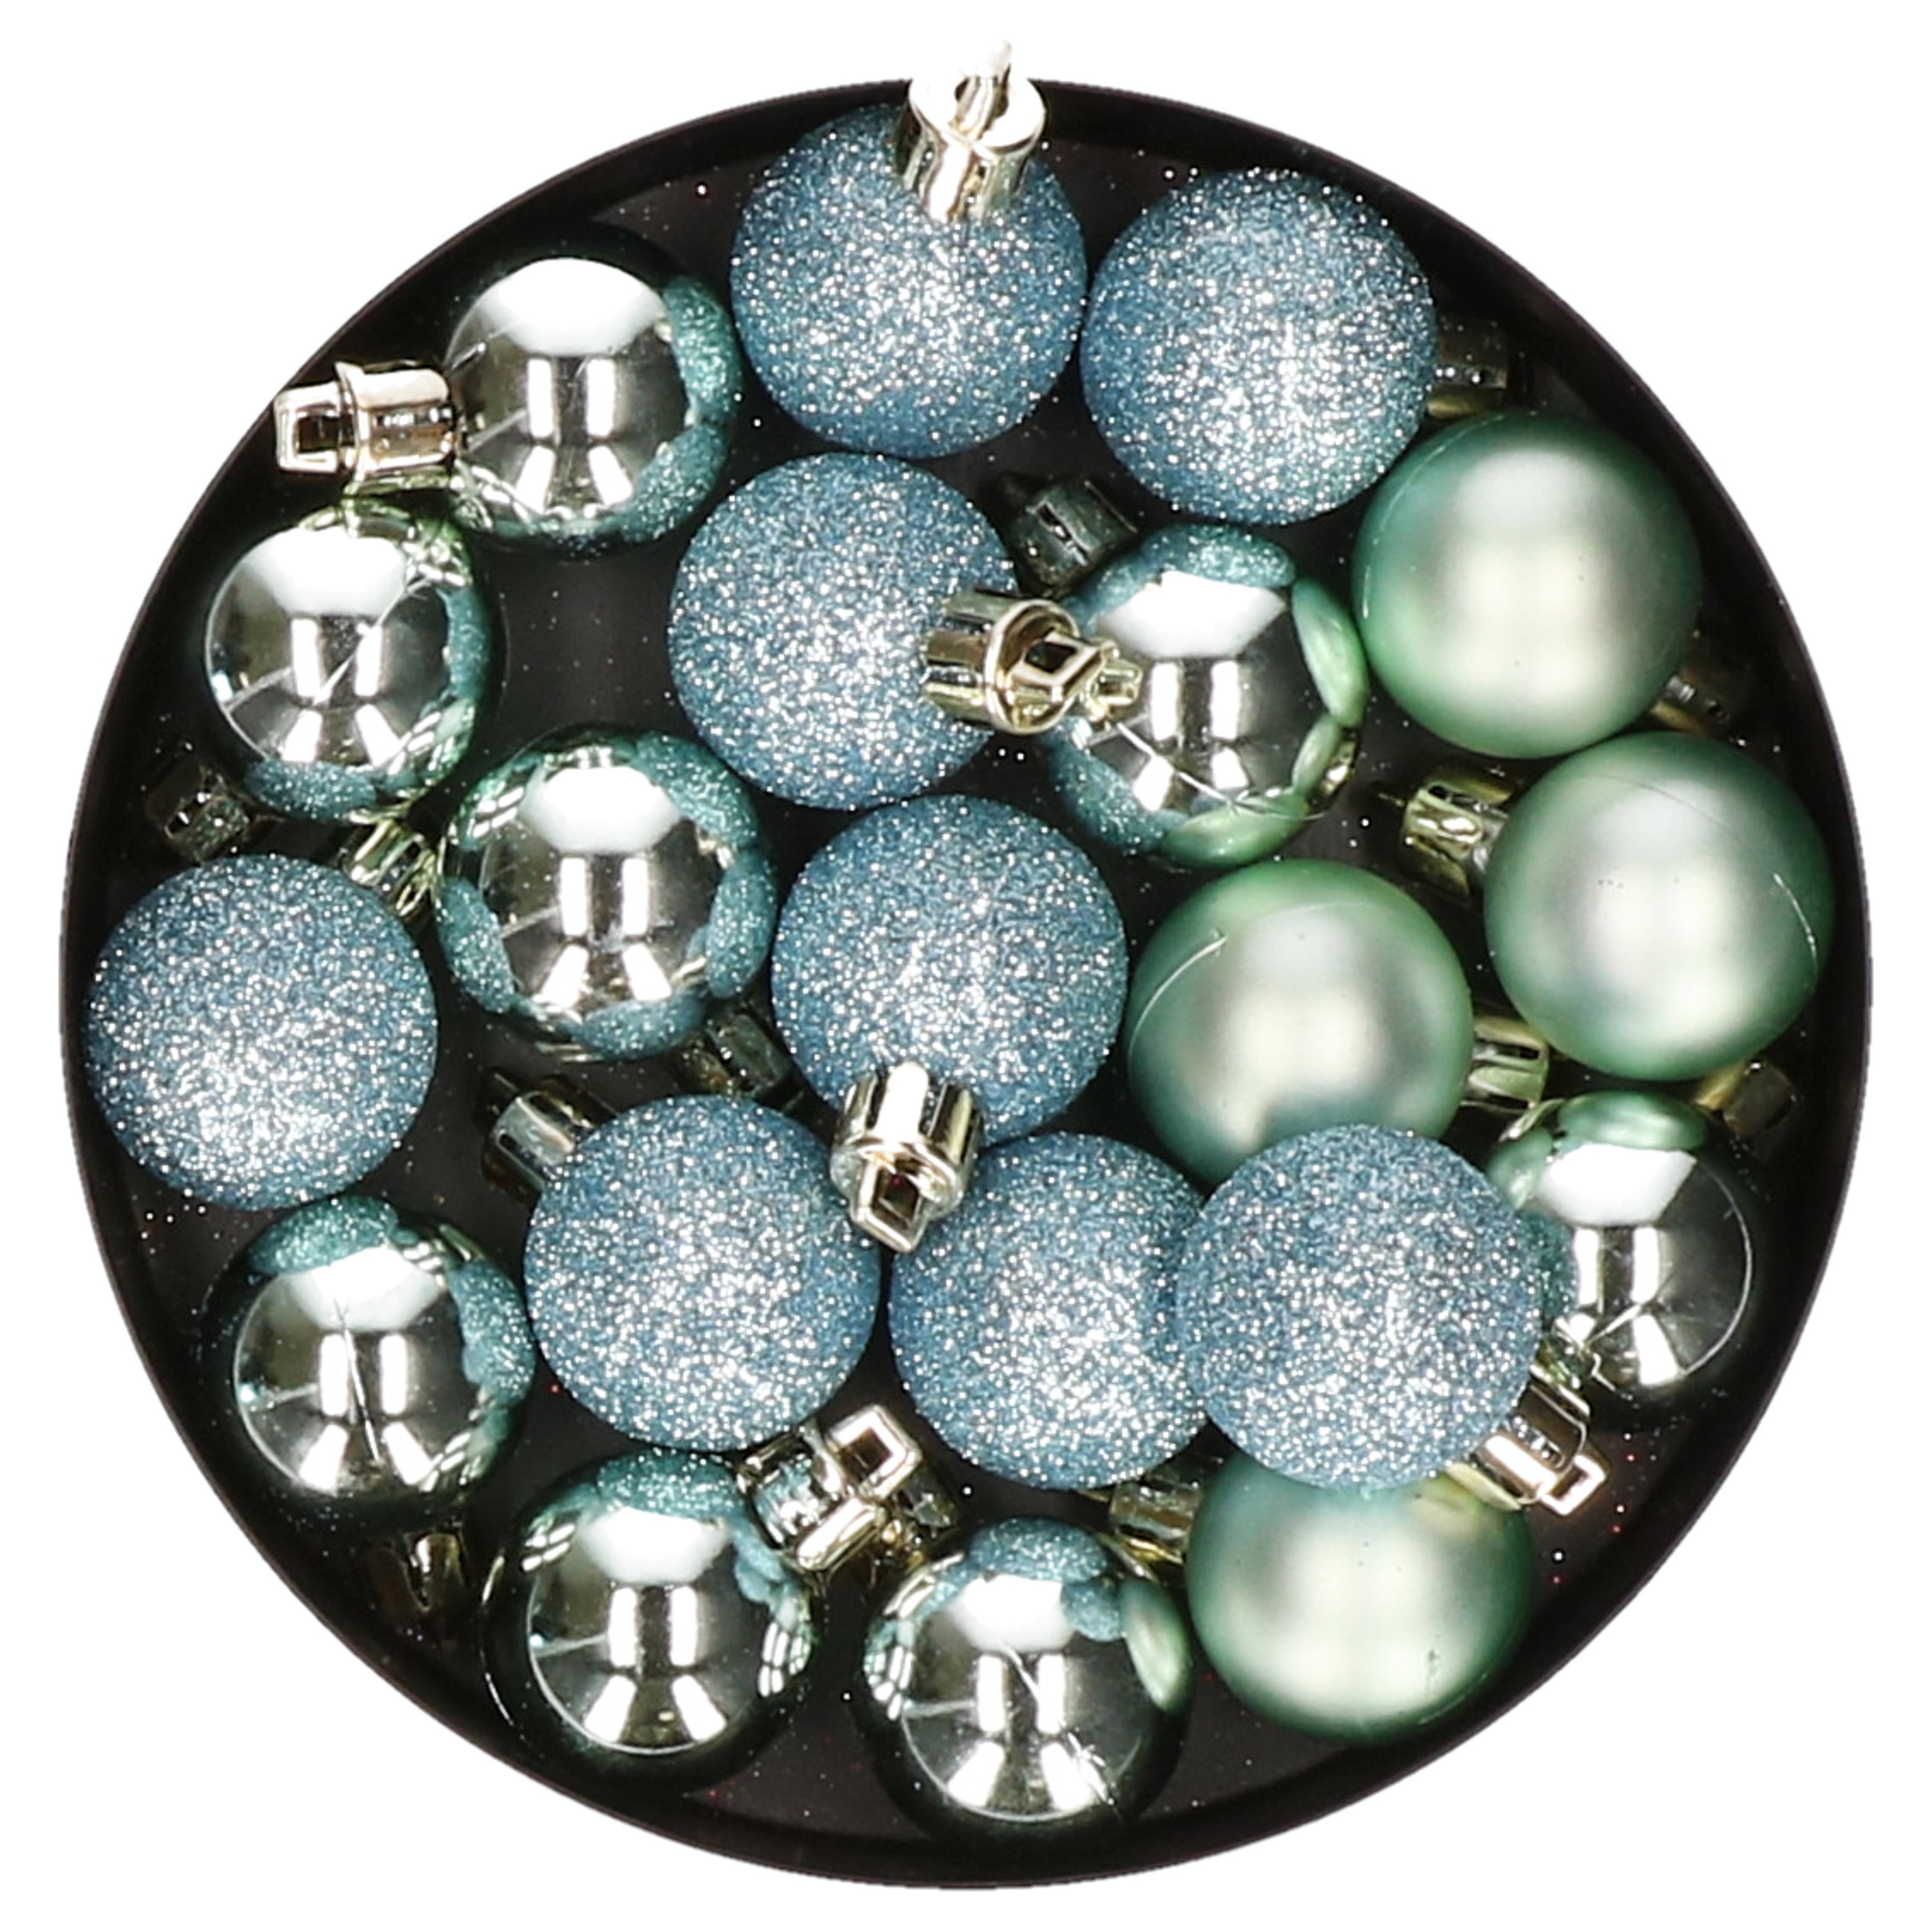 60x stuks kleine kunststof kerstballen mint groen 3 cm mat-glans-glitter